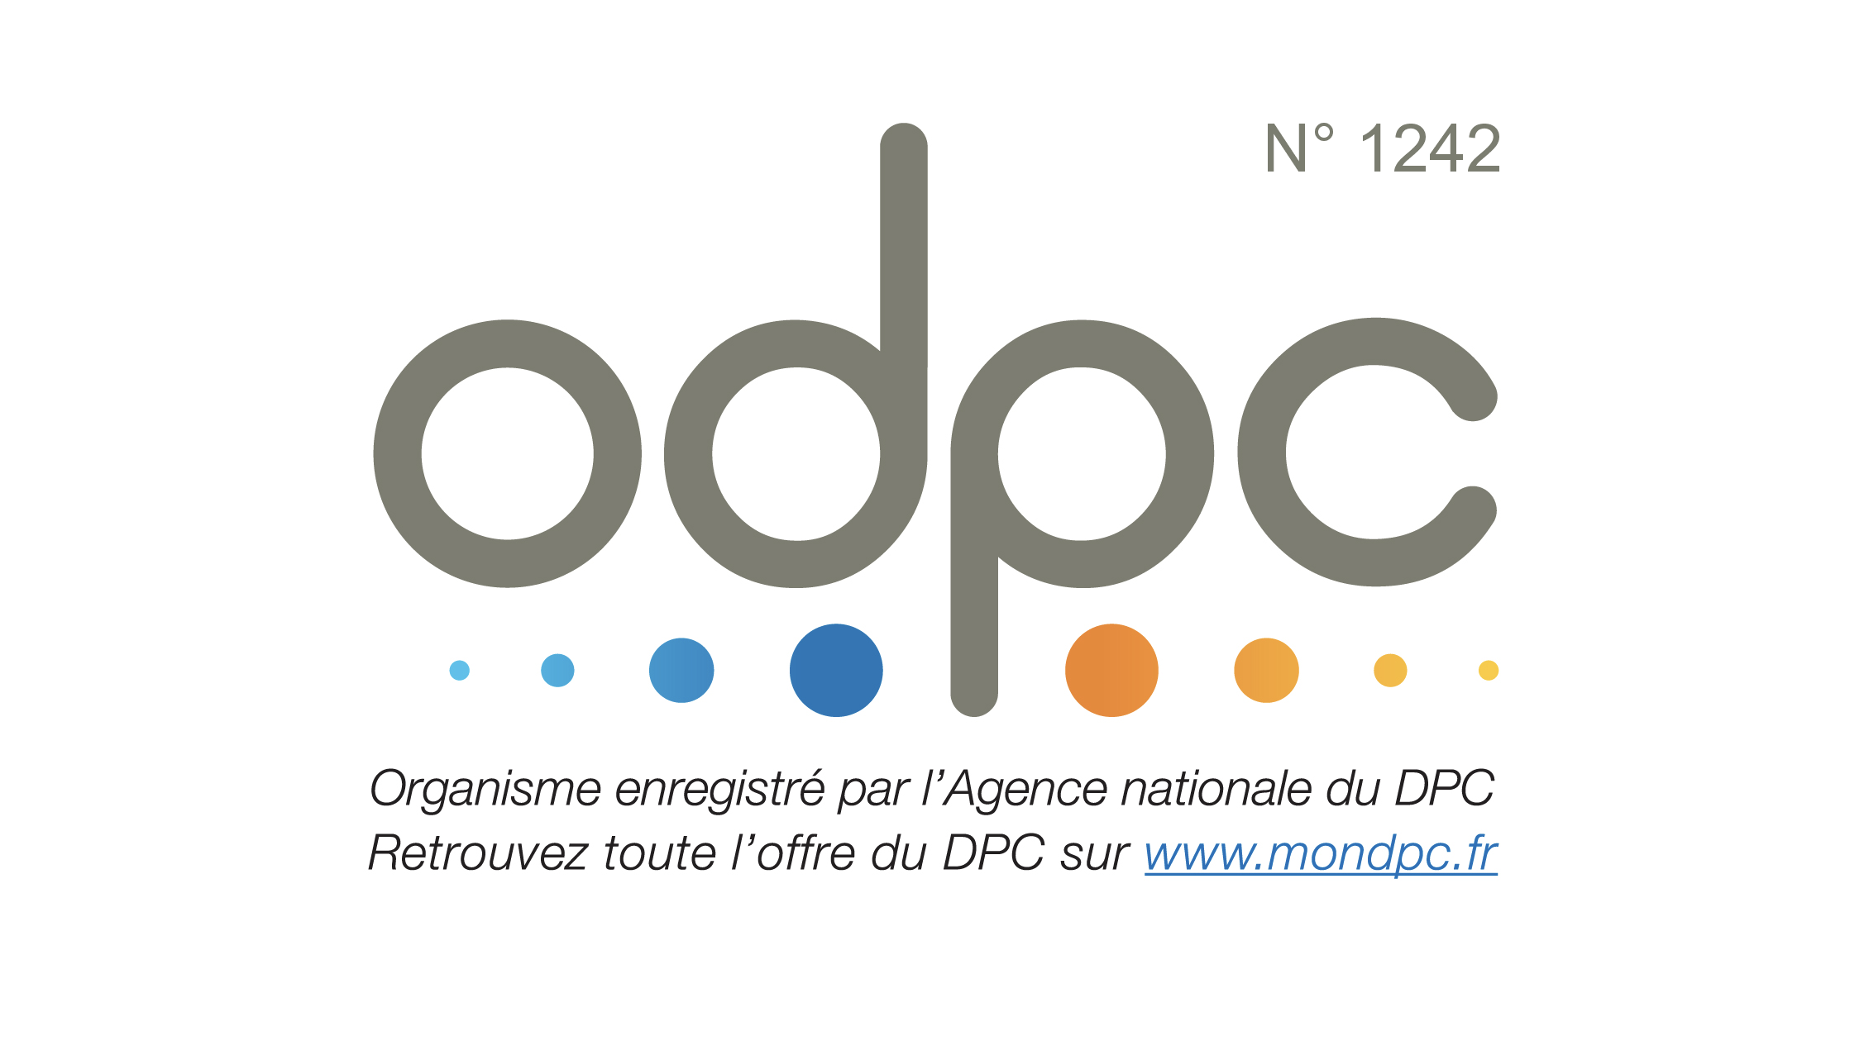 Organisme enregistré par l'agence nationale du DPC. Retrouvez toute l'offre du DPC sur www.mondpc.fr